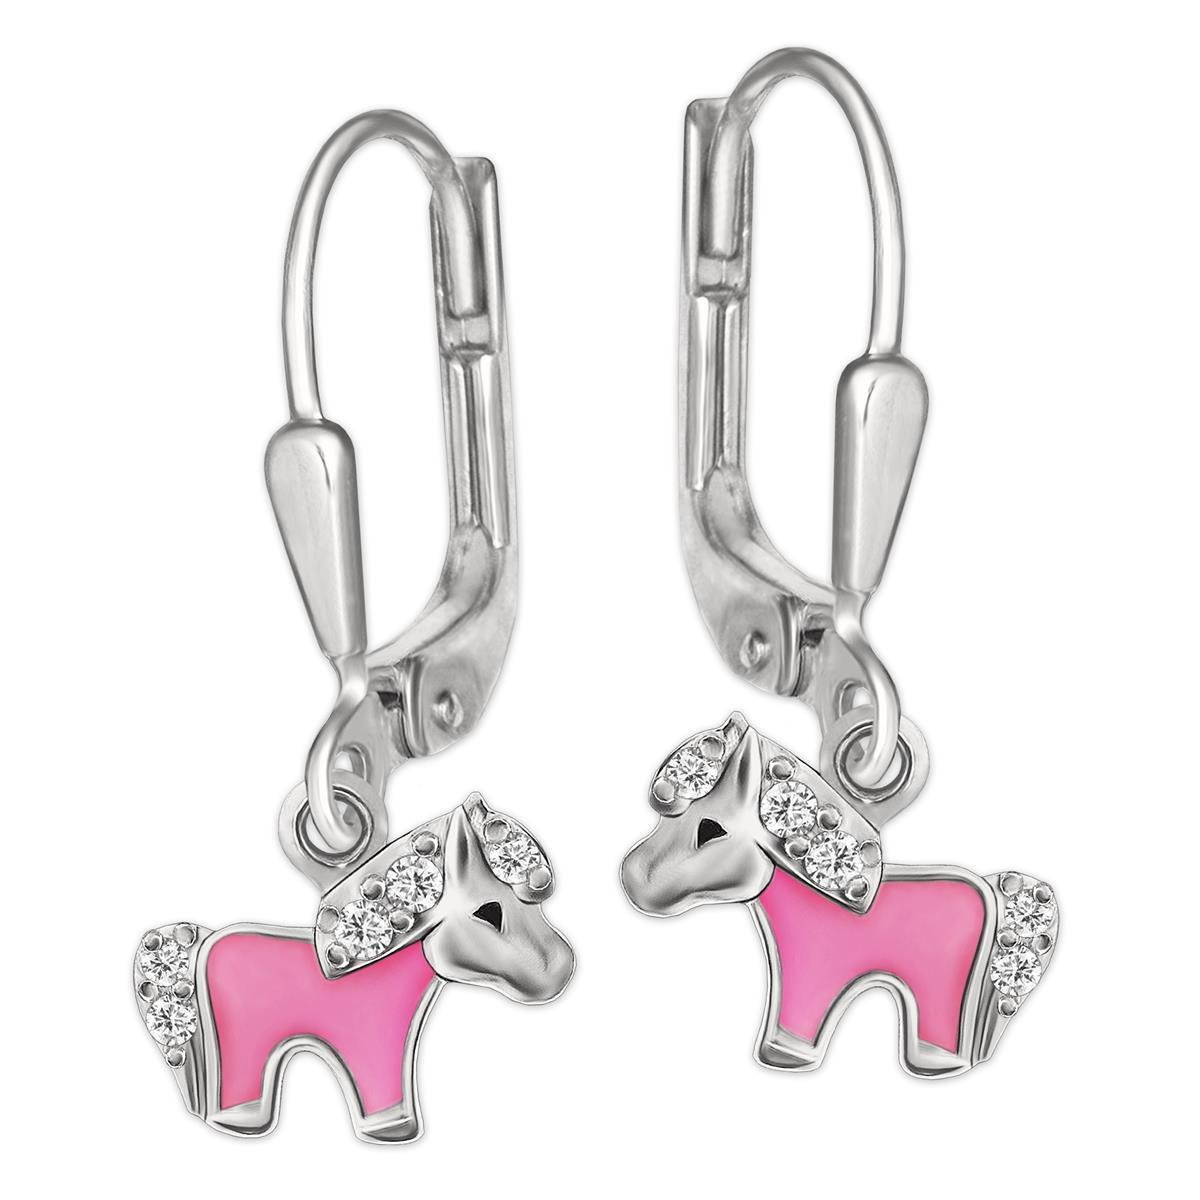 Silberne Ohrhänger 20 mm Mini Pony 5 mm, teils rosa lackiert mit mehreren Zirkonias glänzend STERLING SILBER 925